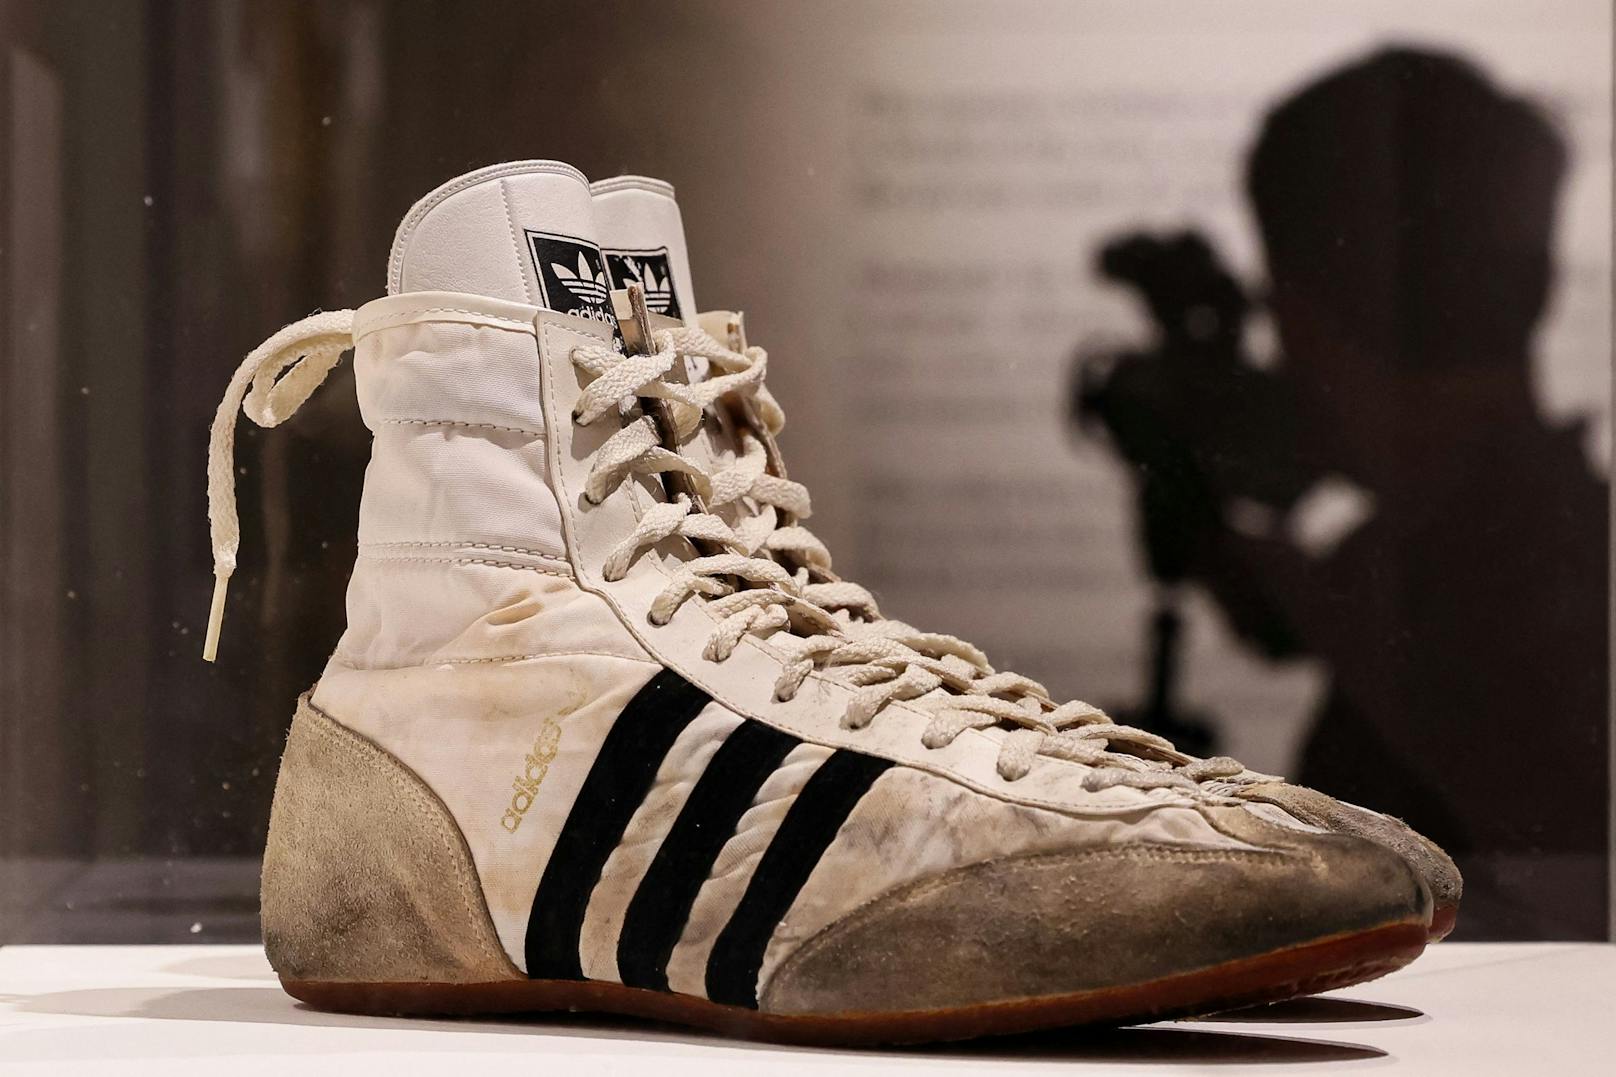 Auch die von Freddie Mercury getragenen High-Top-Sneakers von Adidas sind Teil der Ausstellung.